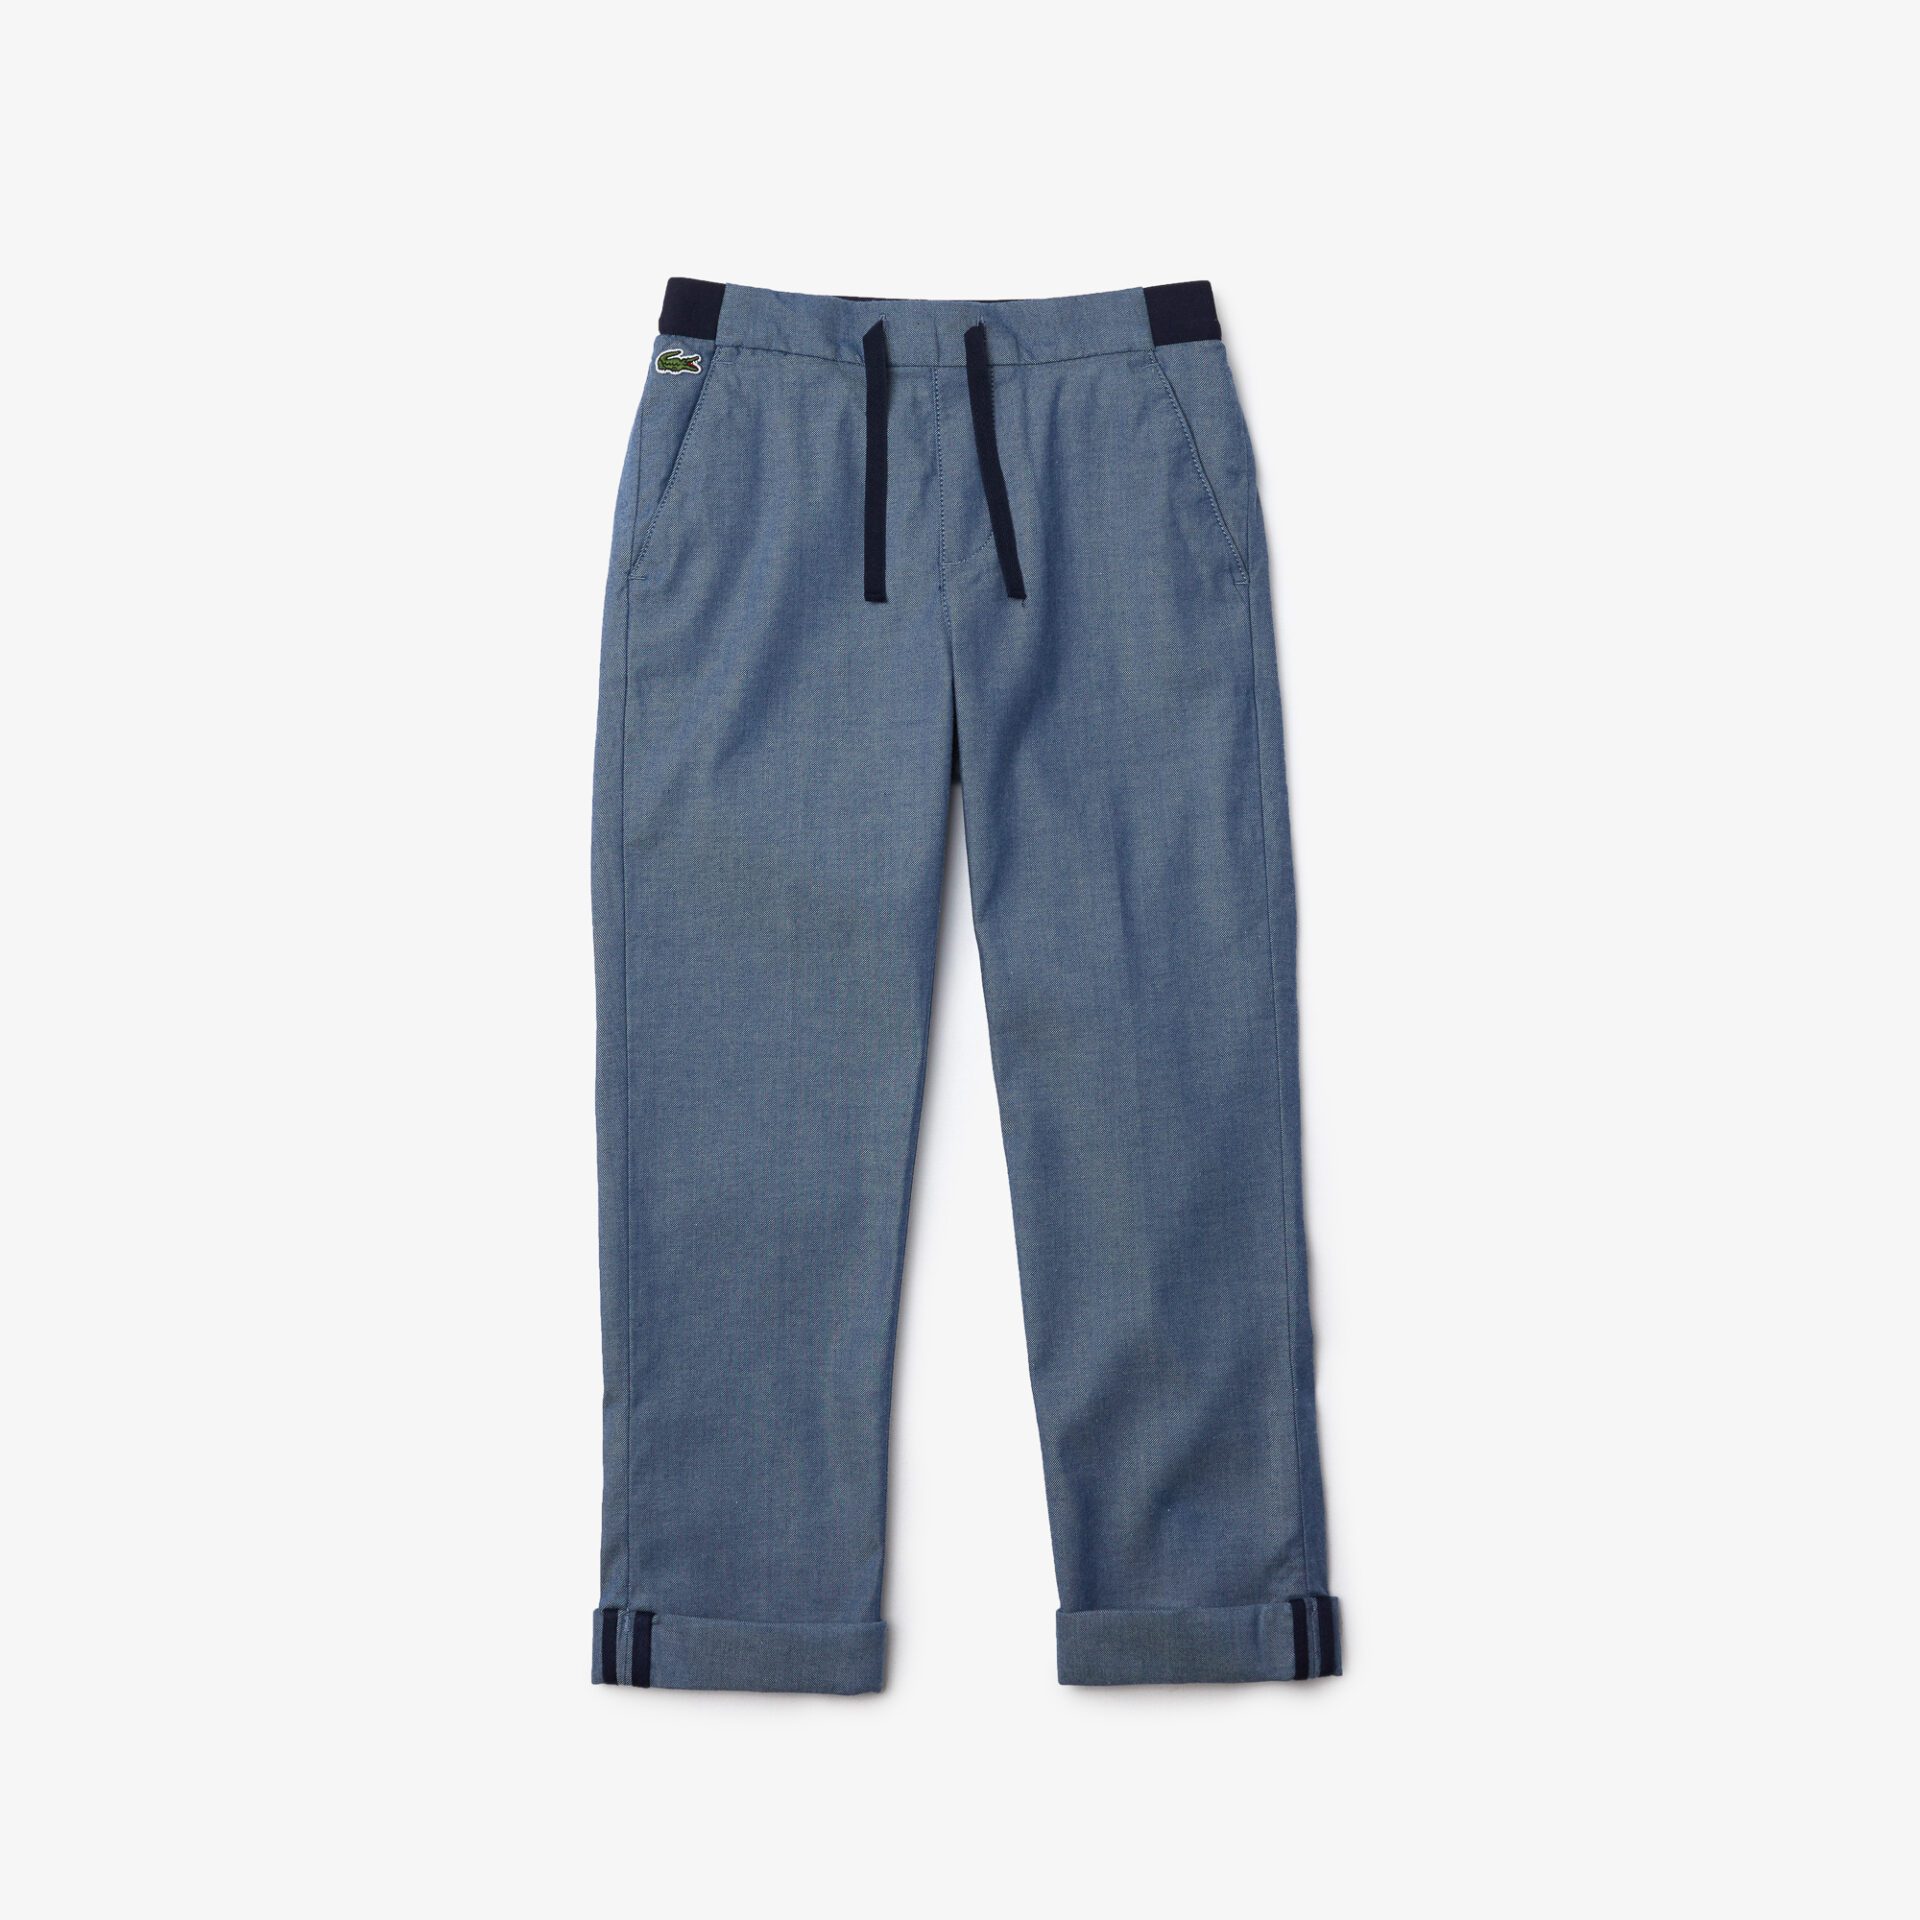 Удобные легкие хлопковые брюки Lacoste для мальчиков